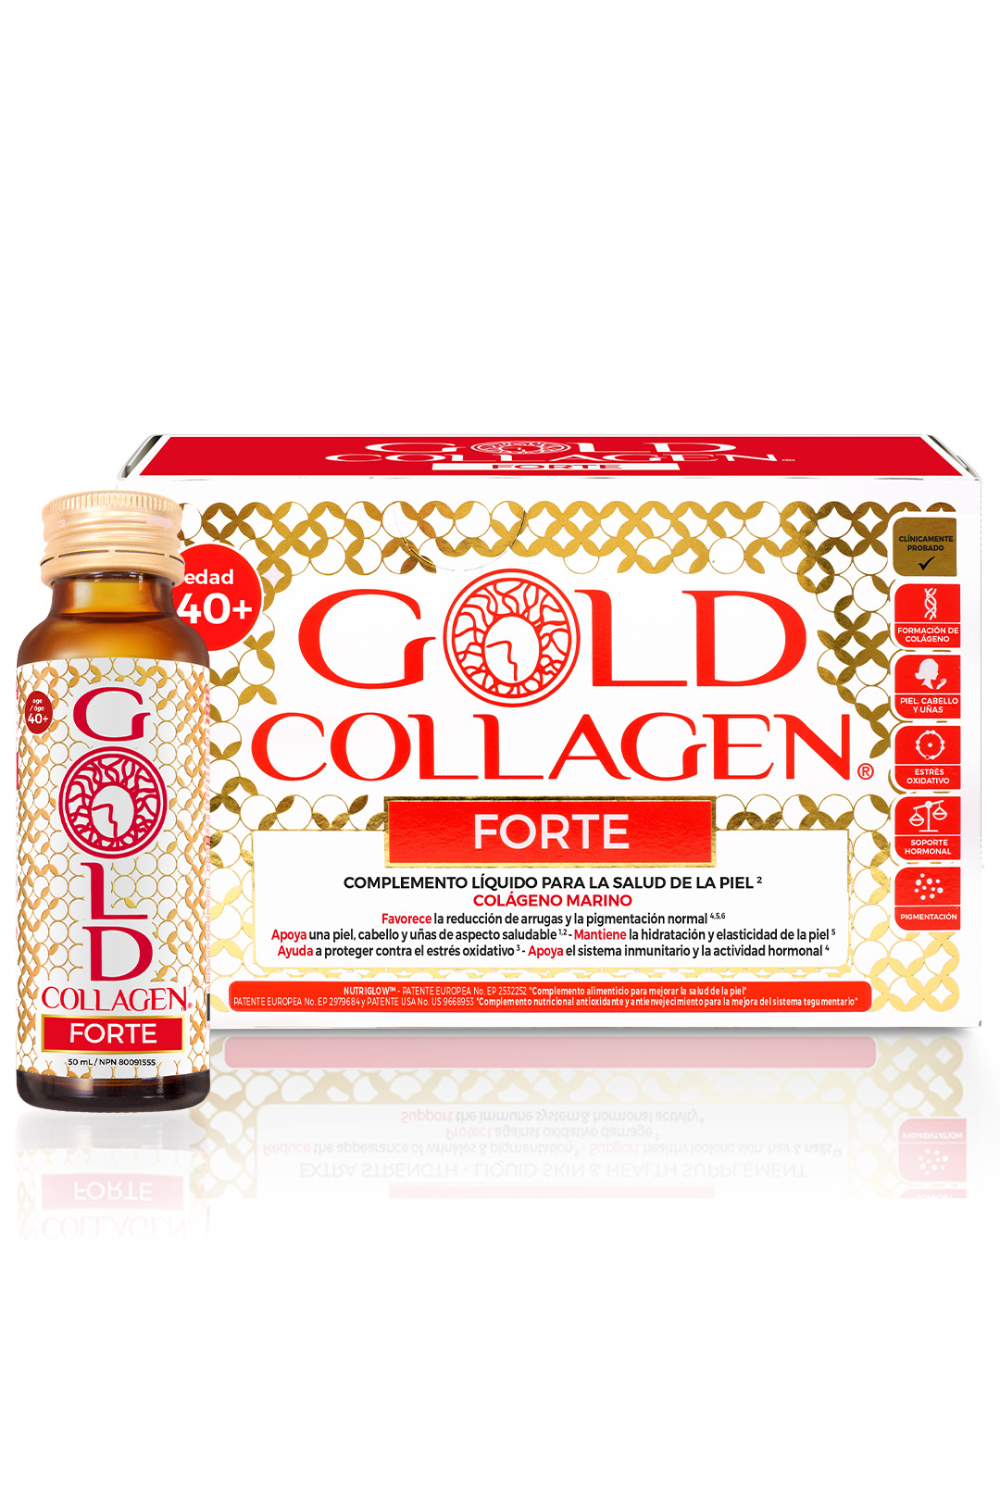 Gold Collagen Forte.